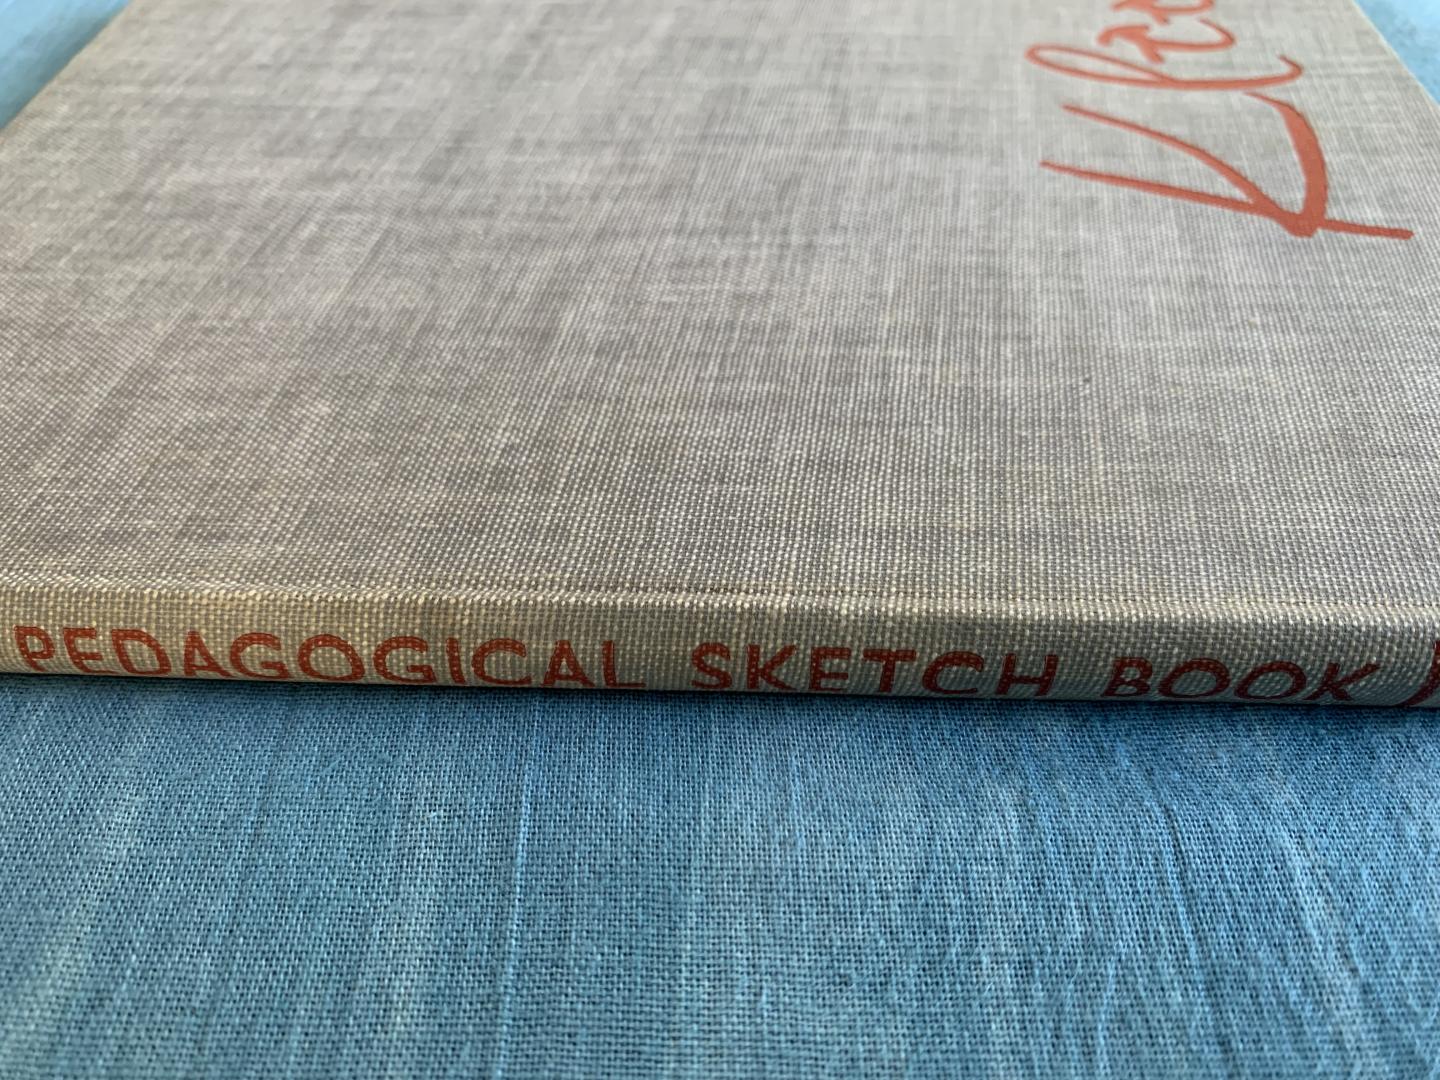 Klee, Paul - Pedagogical sketchbook